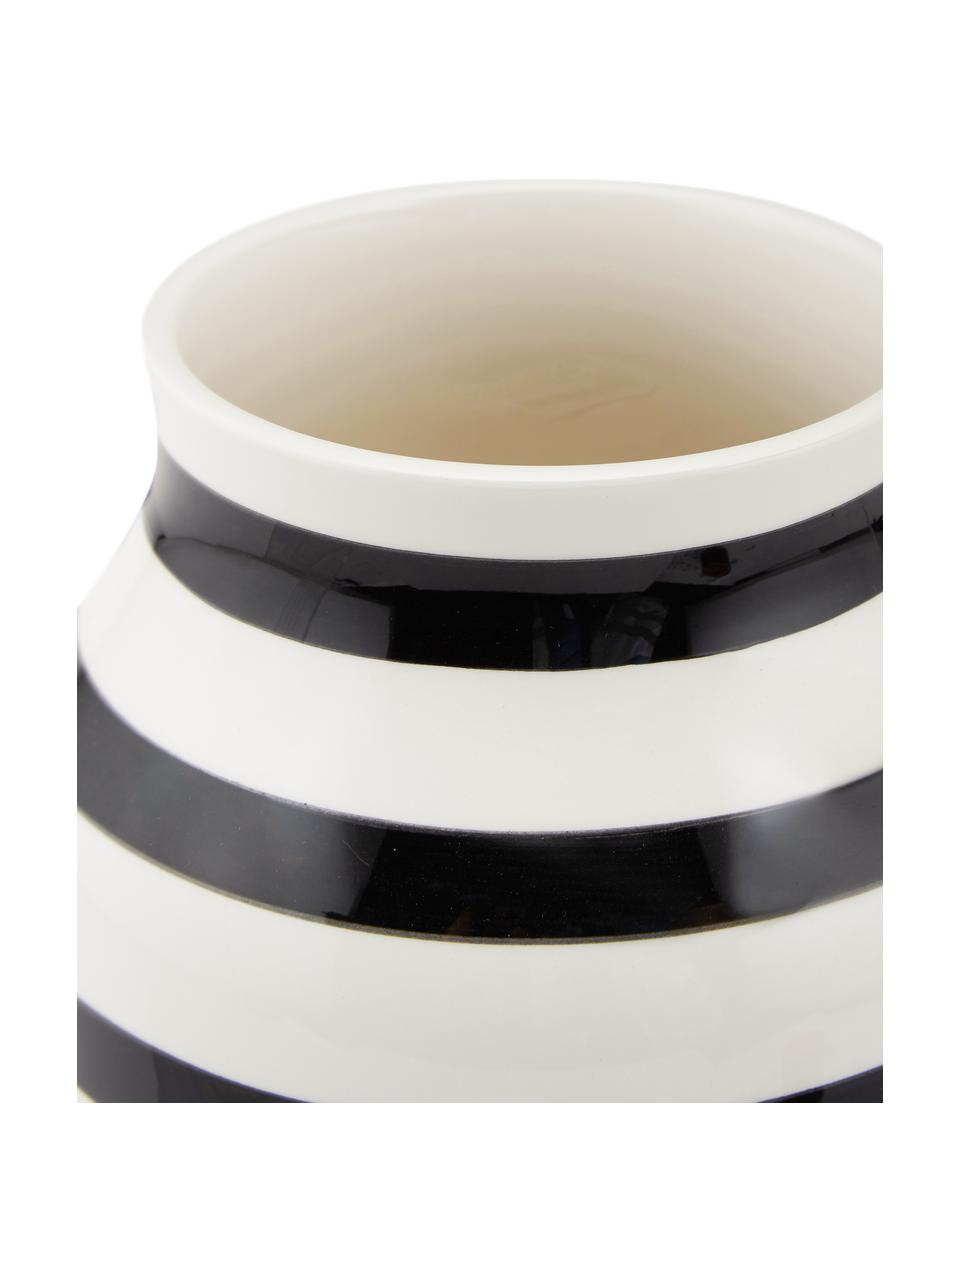 Handgefertigte Design-Vase Omaggio, Keramik, Schwarz, Weiß, Ø 17 x H 20 cm